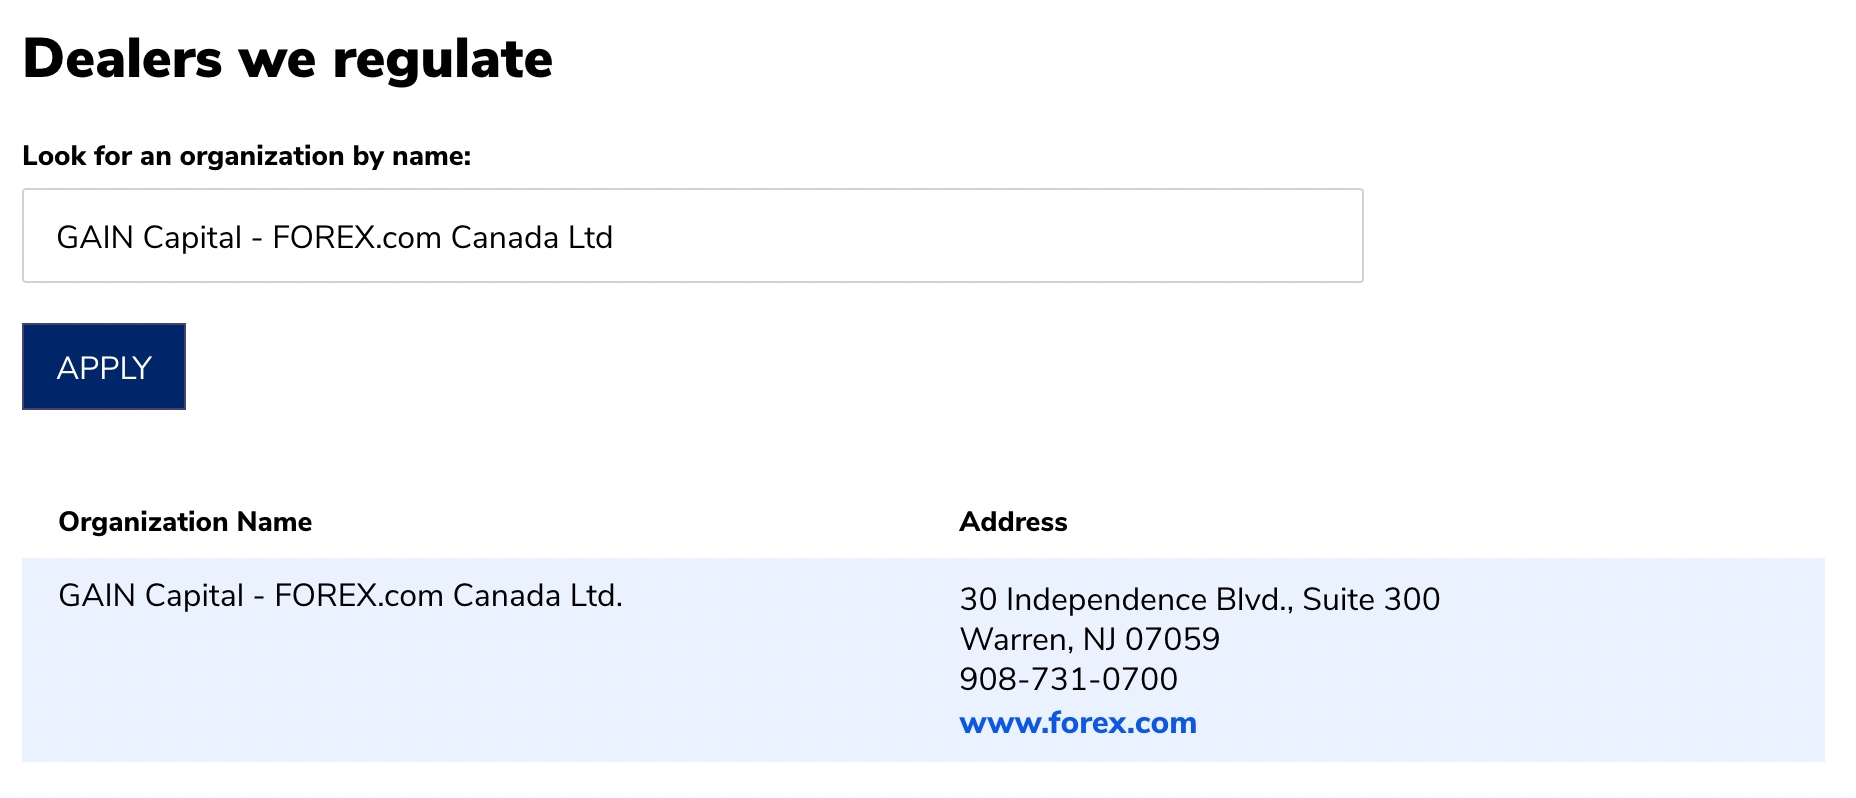 Forex.com CIRO license details